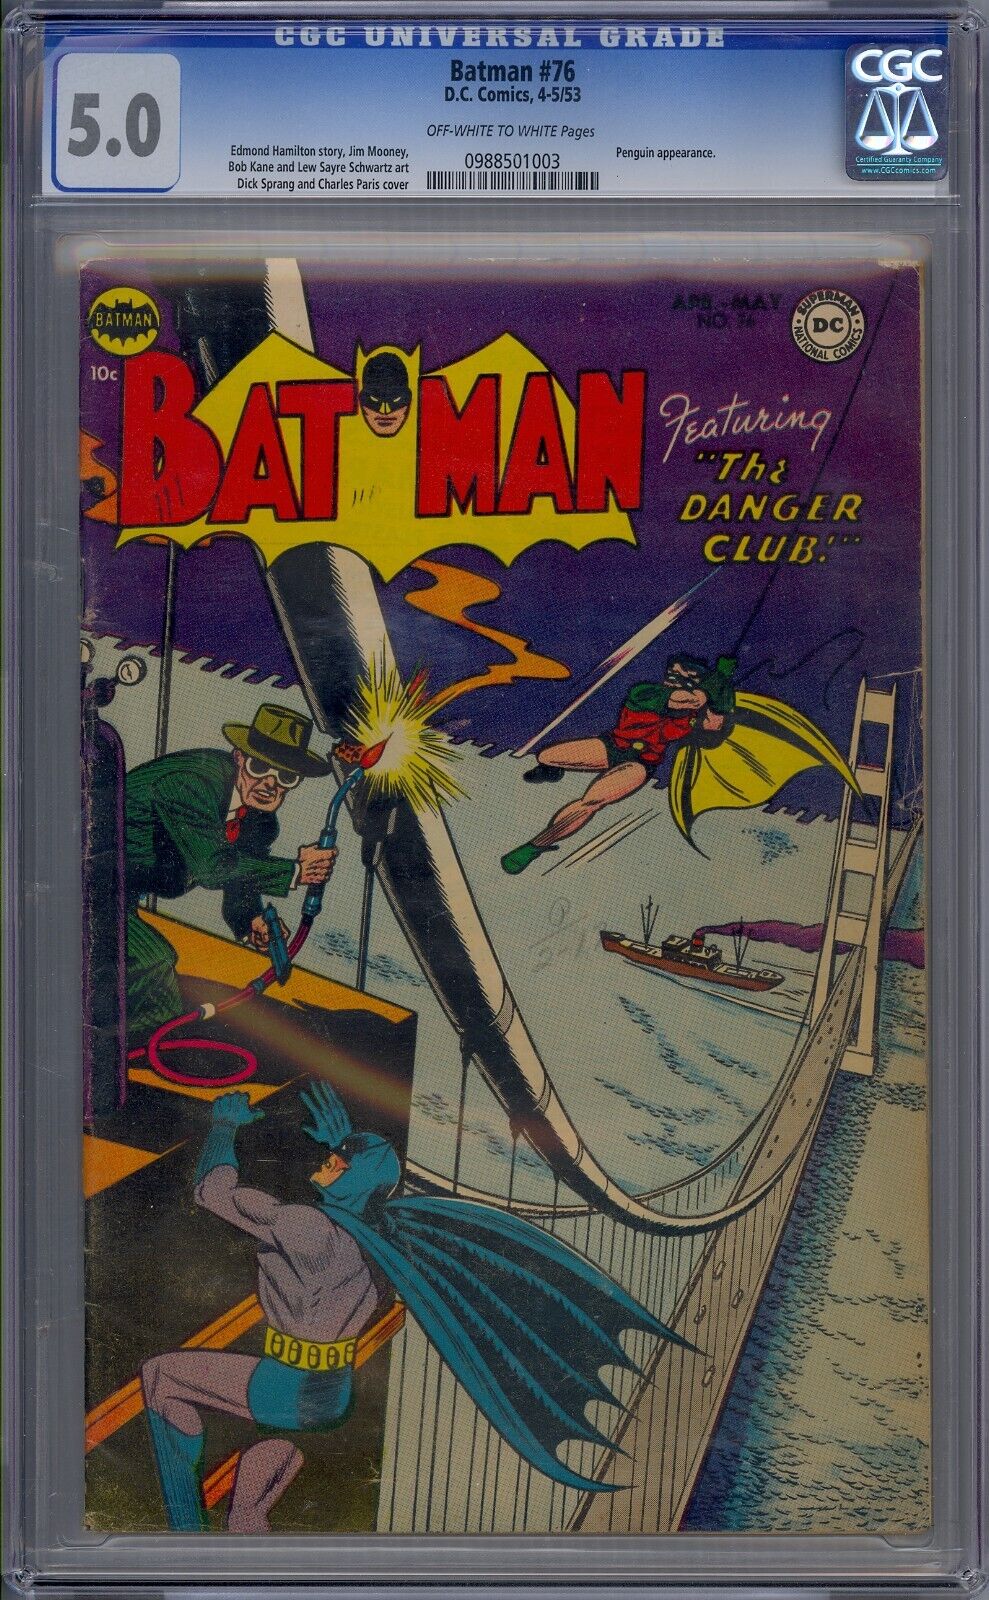 BATMAN #76 1953 DC COMICS CGC 5.0 PENGUIN